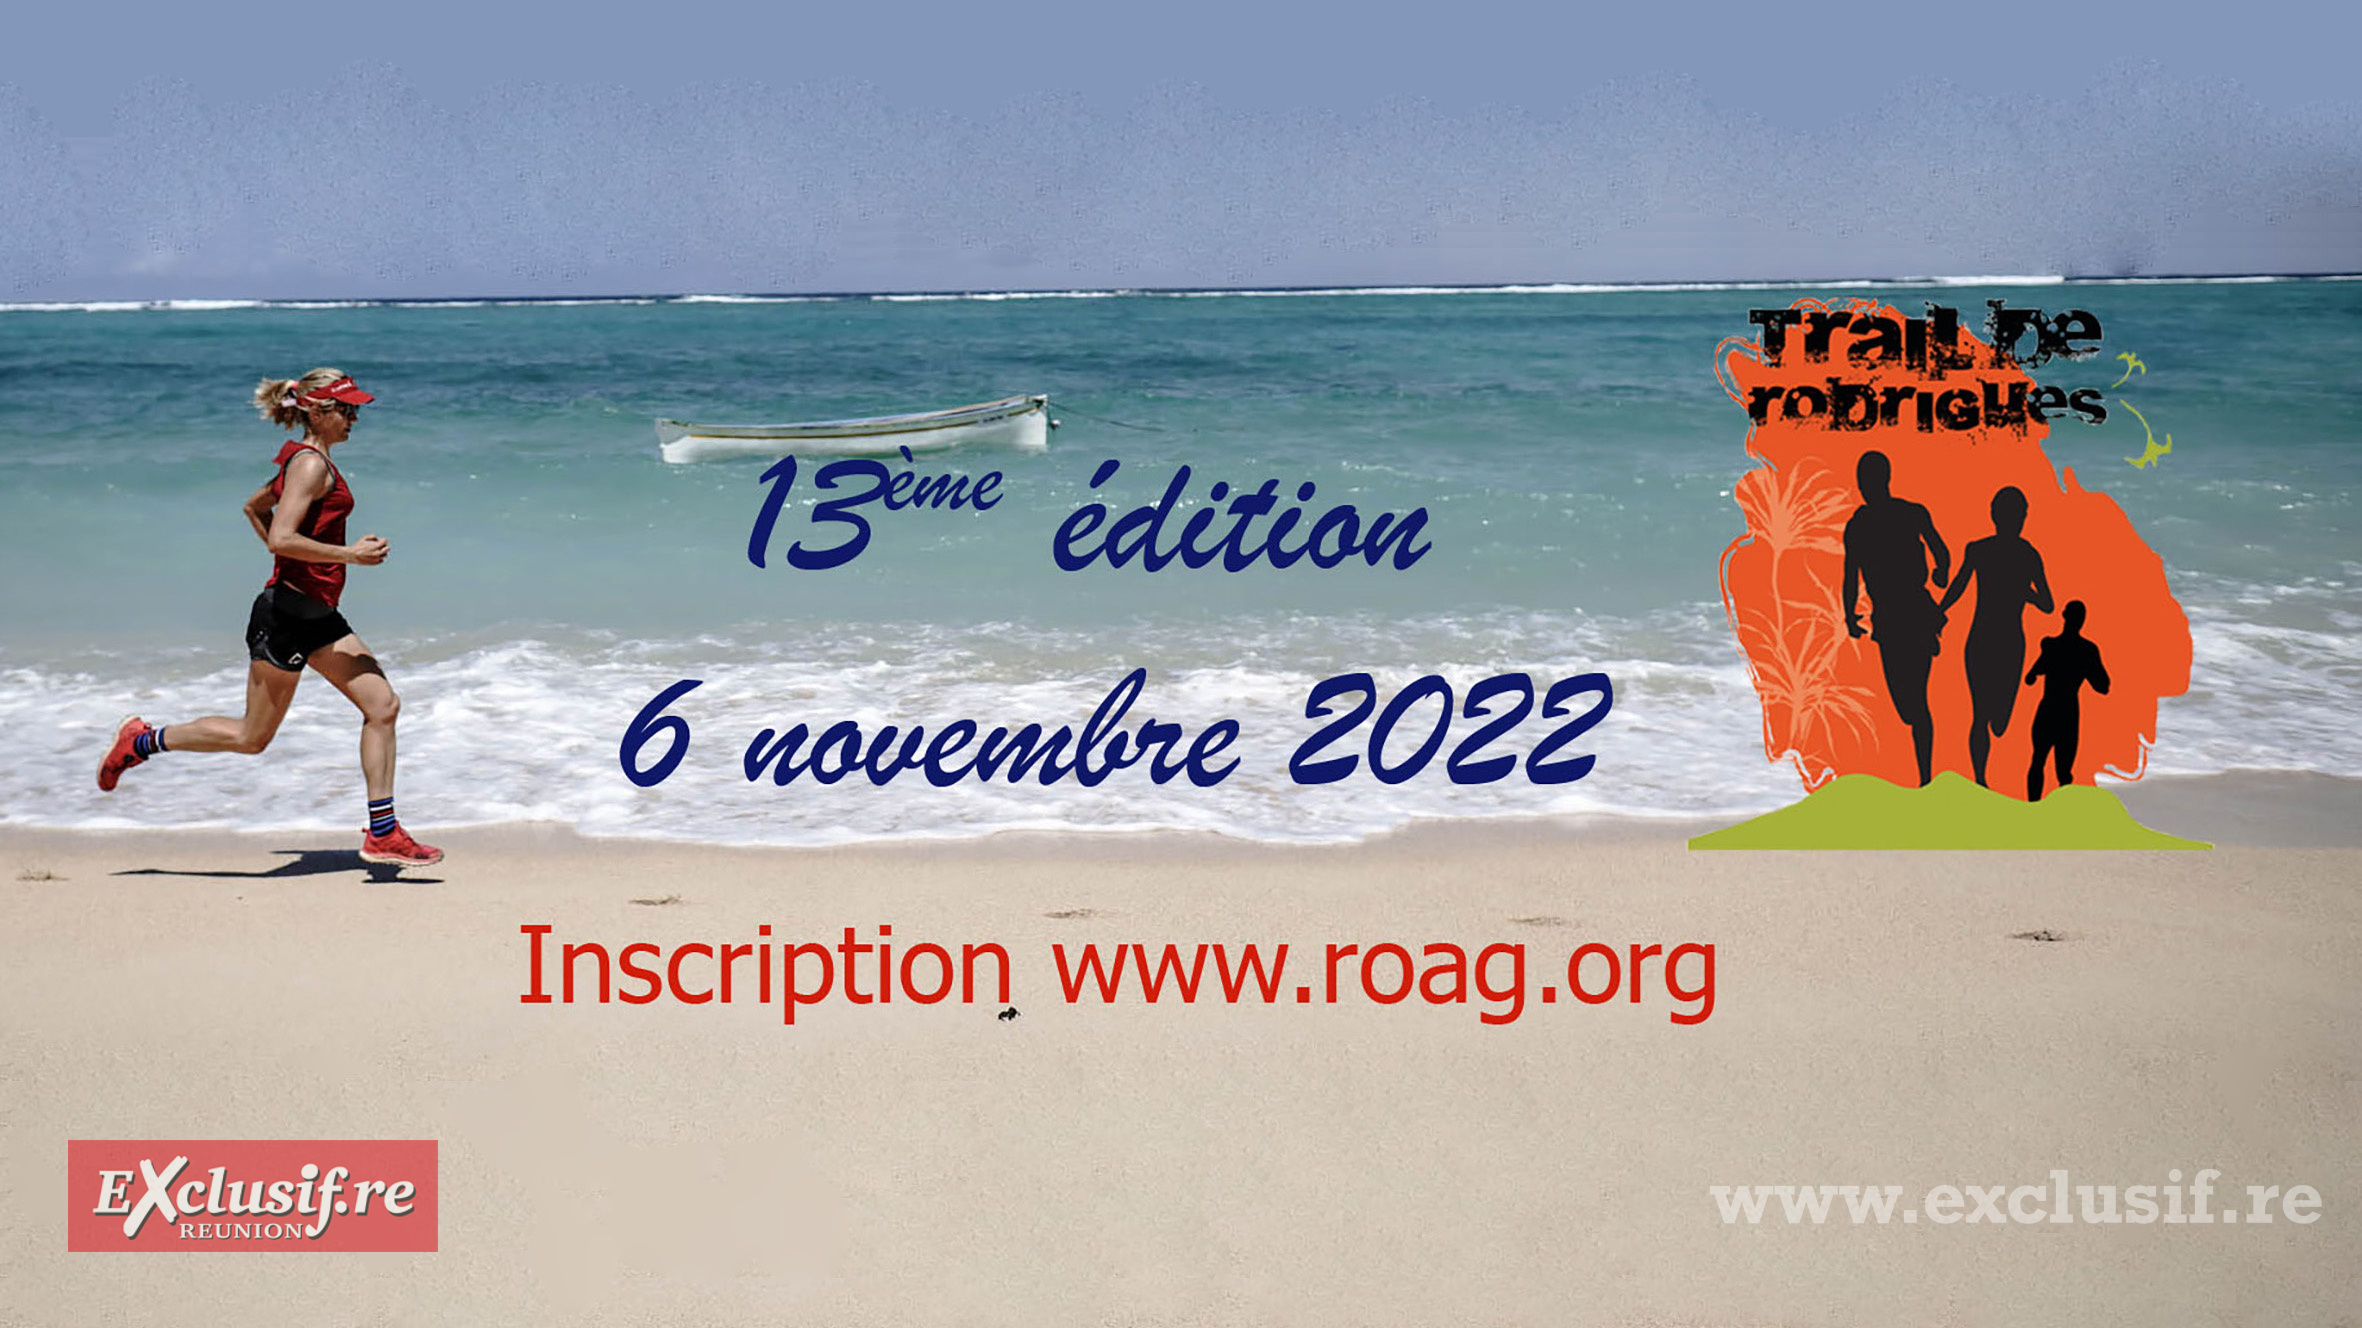 Le Trail de Rodrigues est relancé avec une 13ème édition inédite